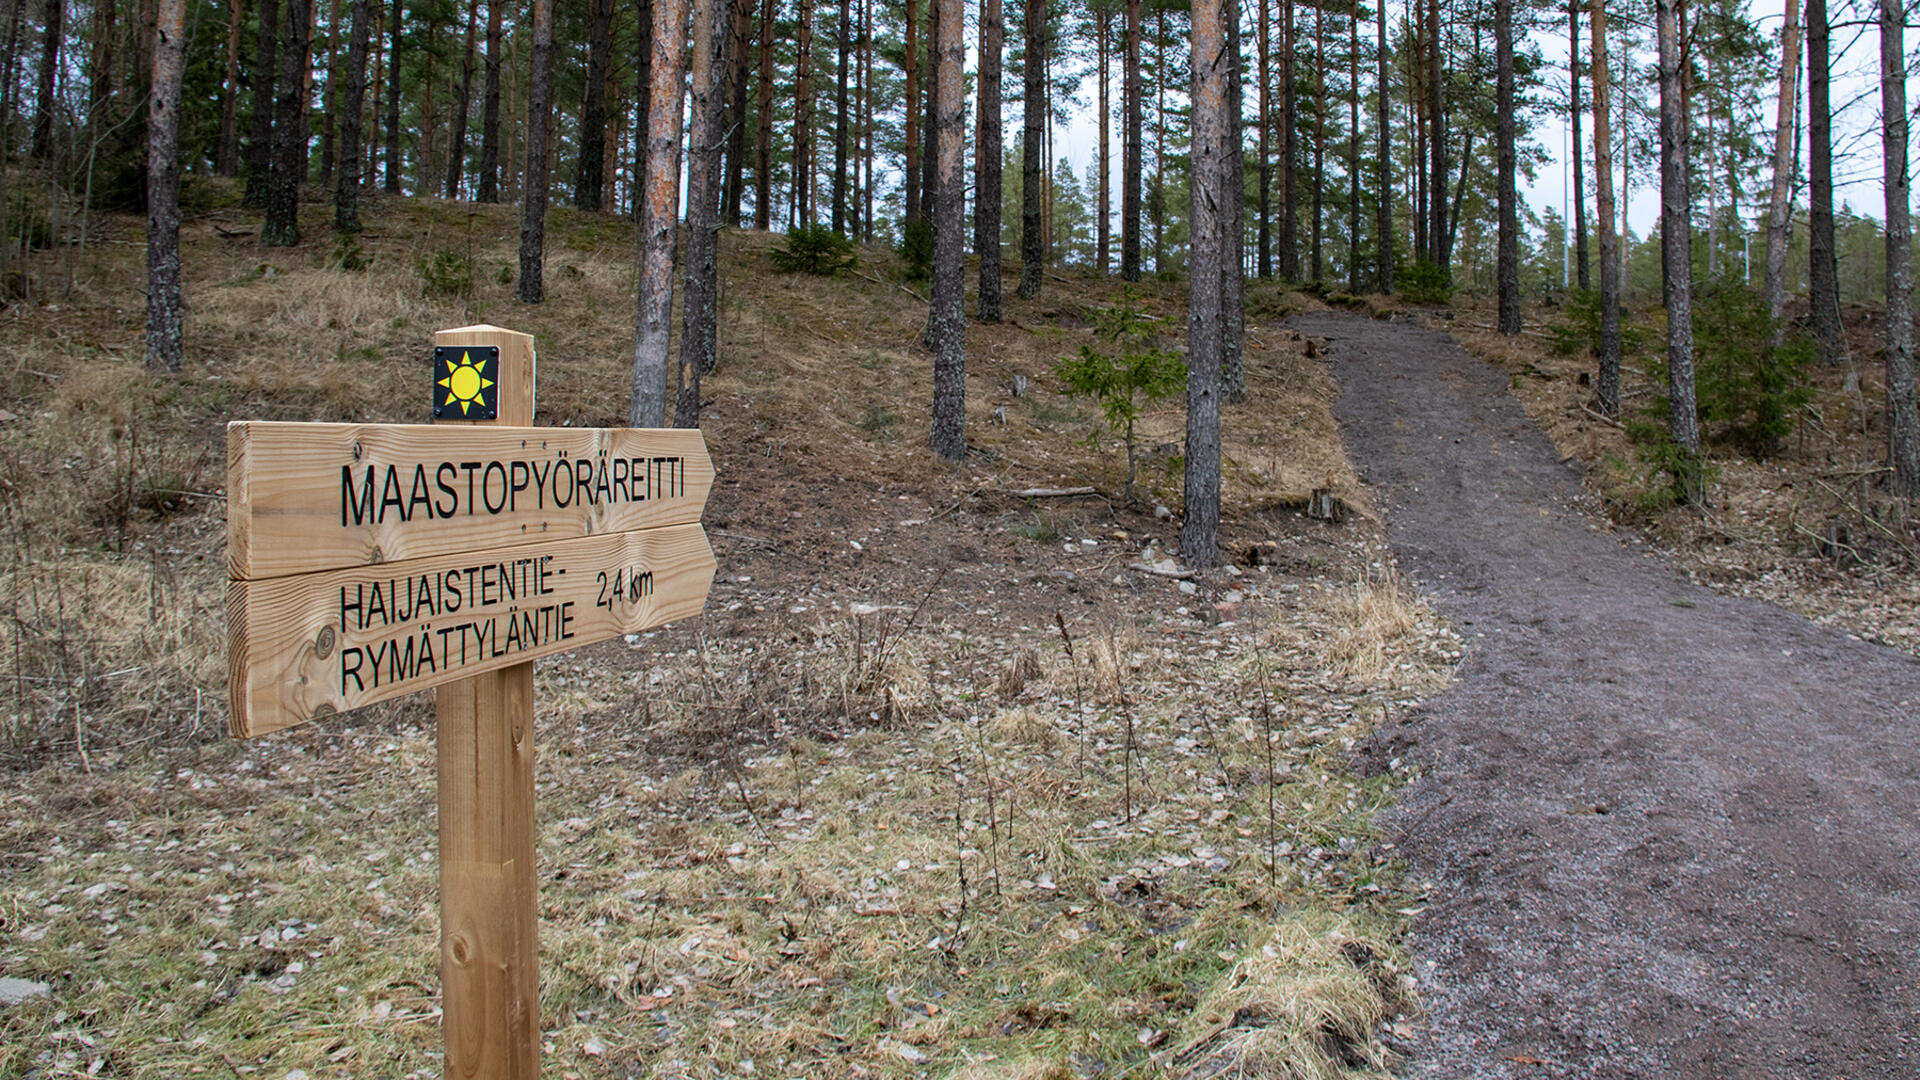 Hiekkatie vie ylämäkeen metsään, tien vieressä on kyltti, joka osoittaa ylämäkeen: Maastopyöräreitti, Haijaistentie-Rymättyläntie 2,4 km.